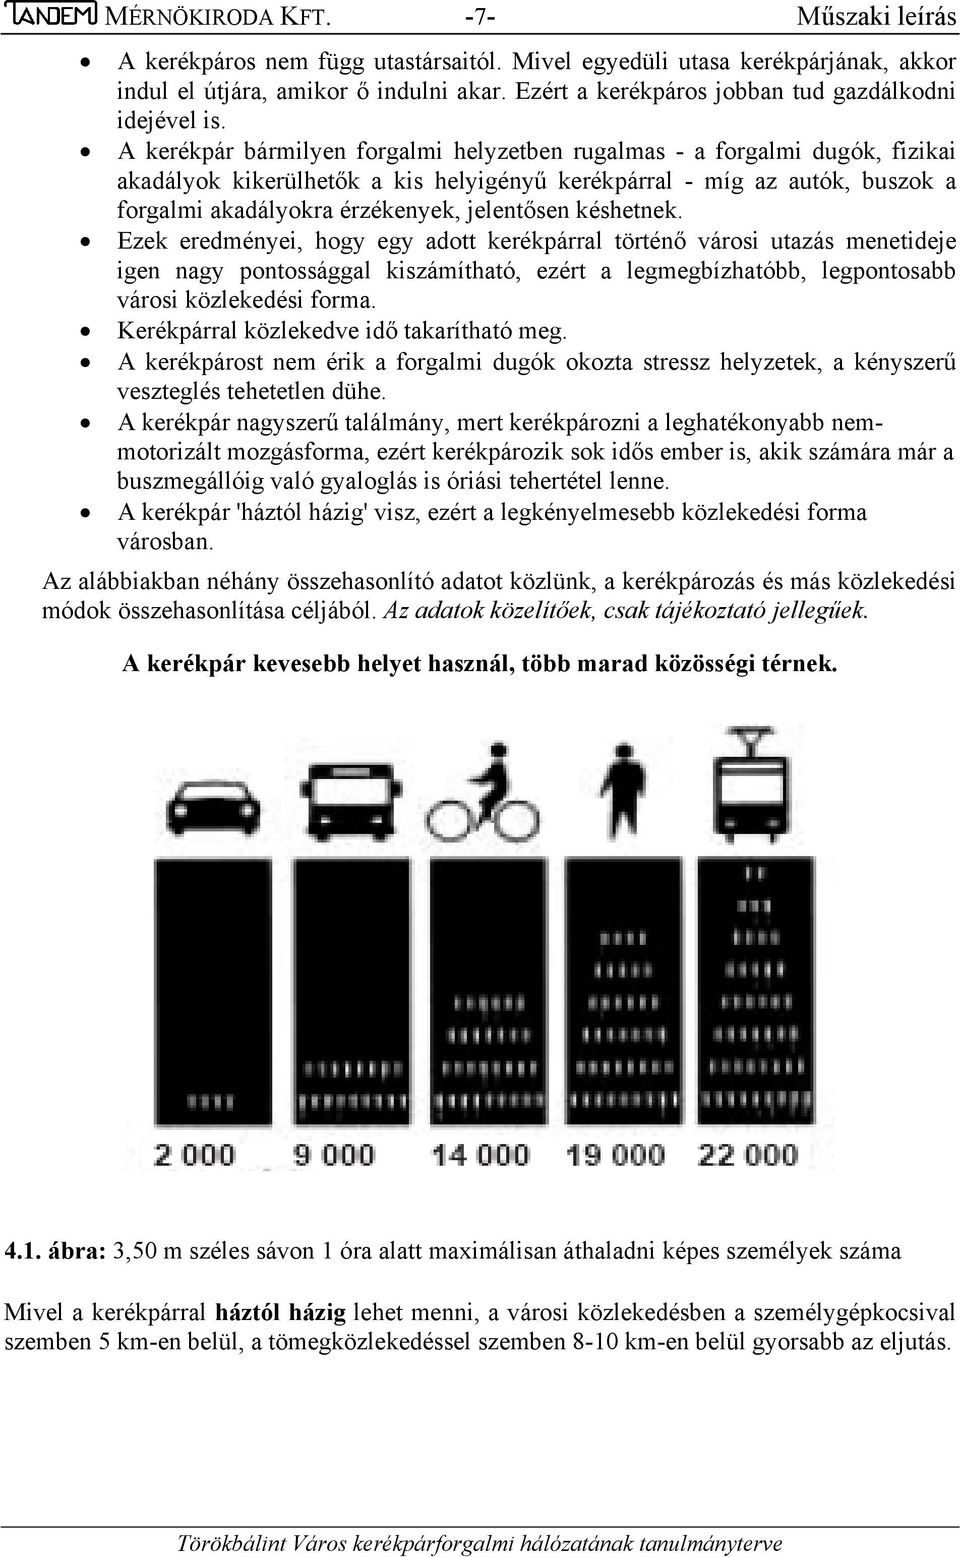 A kerékpár bármilyen forgalmi helyzetben rugalmas - a forgalmi dugók, fizikai akadályok kikerülhetők a kis helyigényű kerékpárral - míg az autók, buszok a forgalmi akadályokra érzékenyek, jelentősen